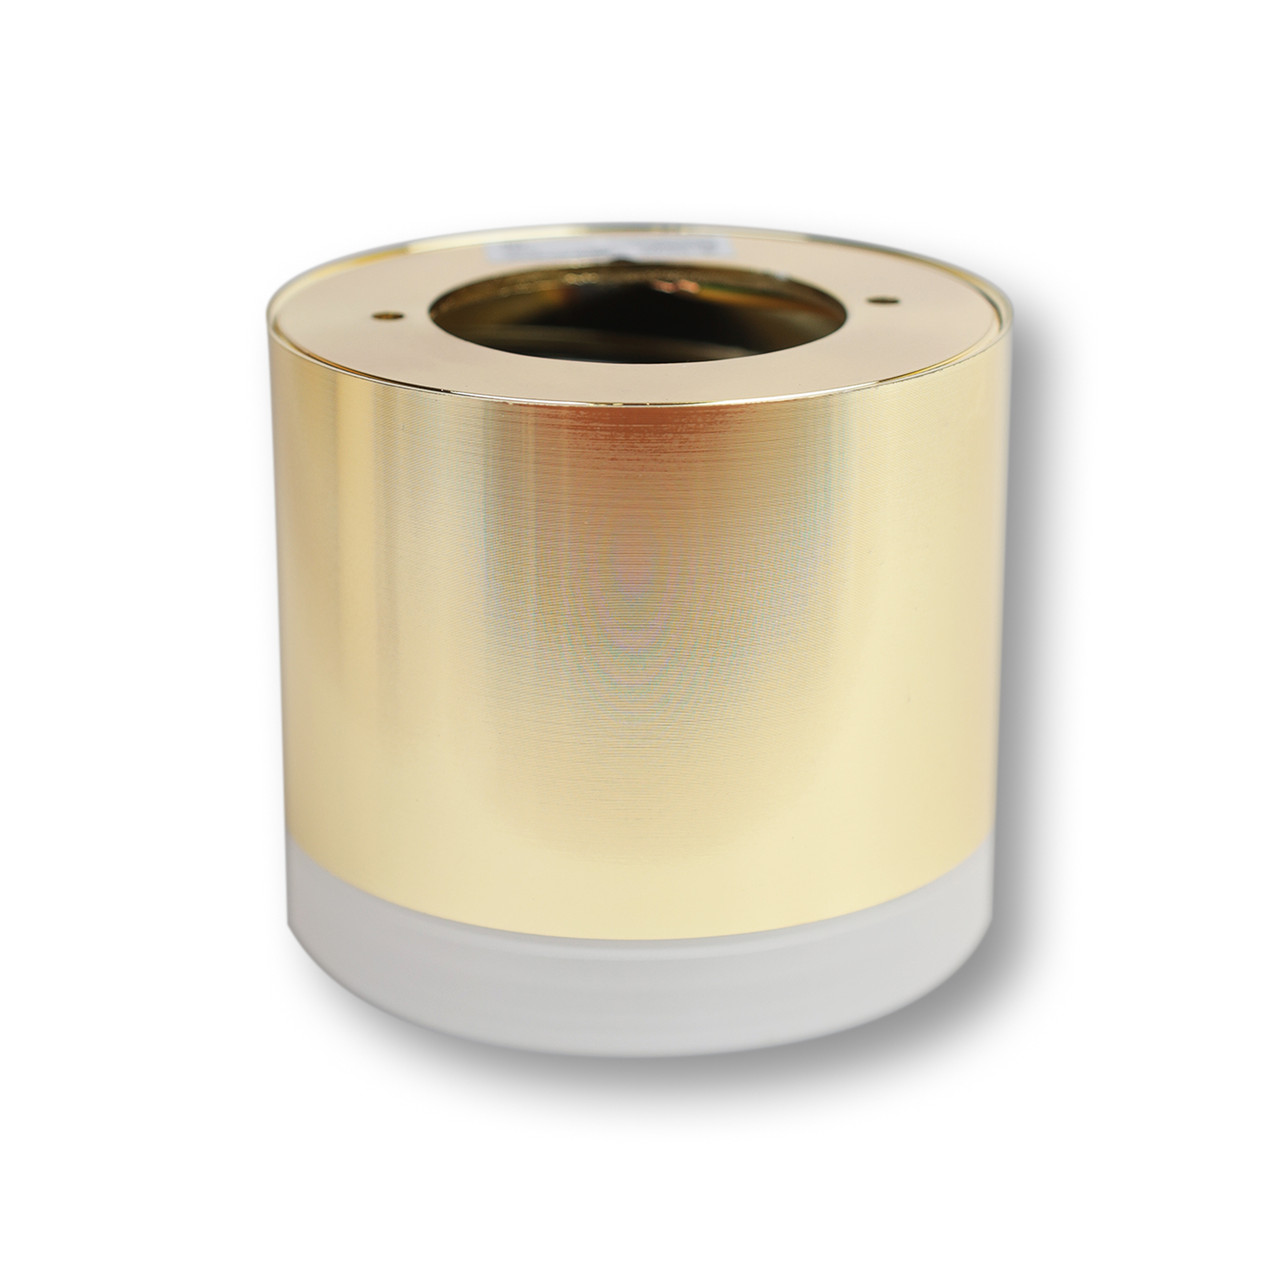 Светильник накладной точечный MERCURY-02, золотой, GX53 LEDAR